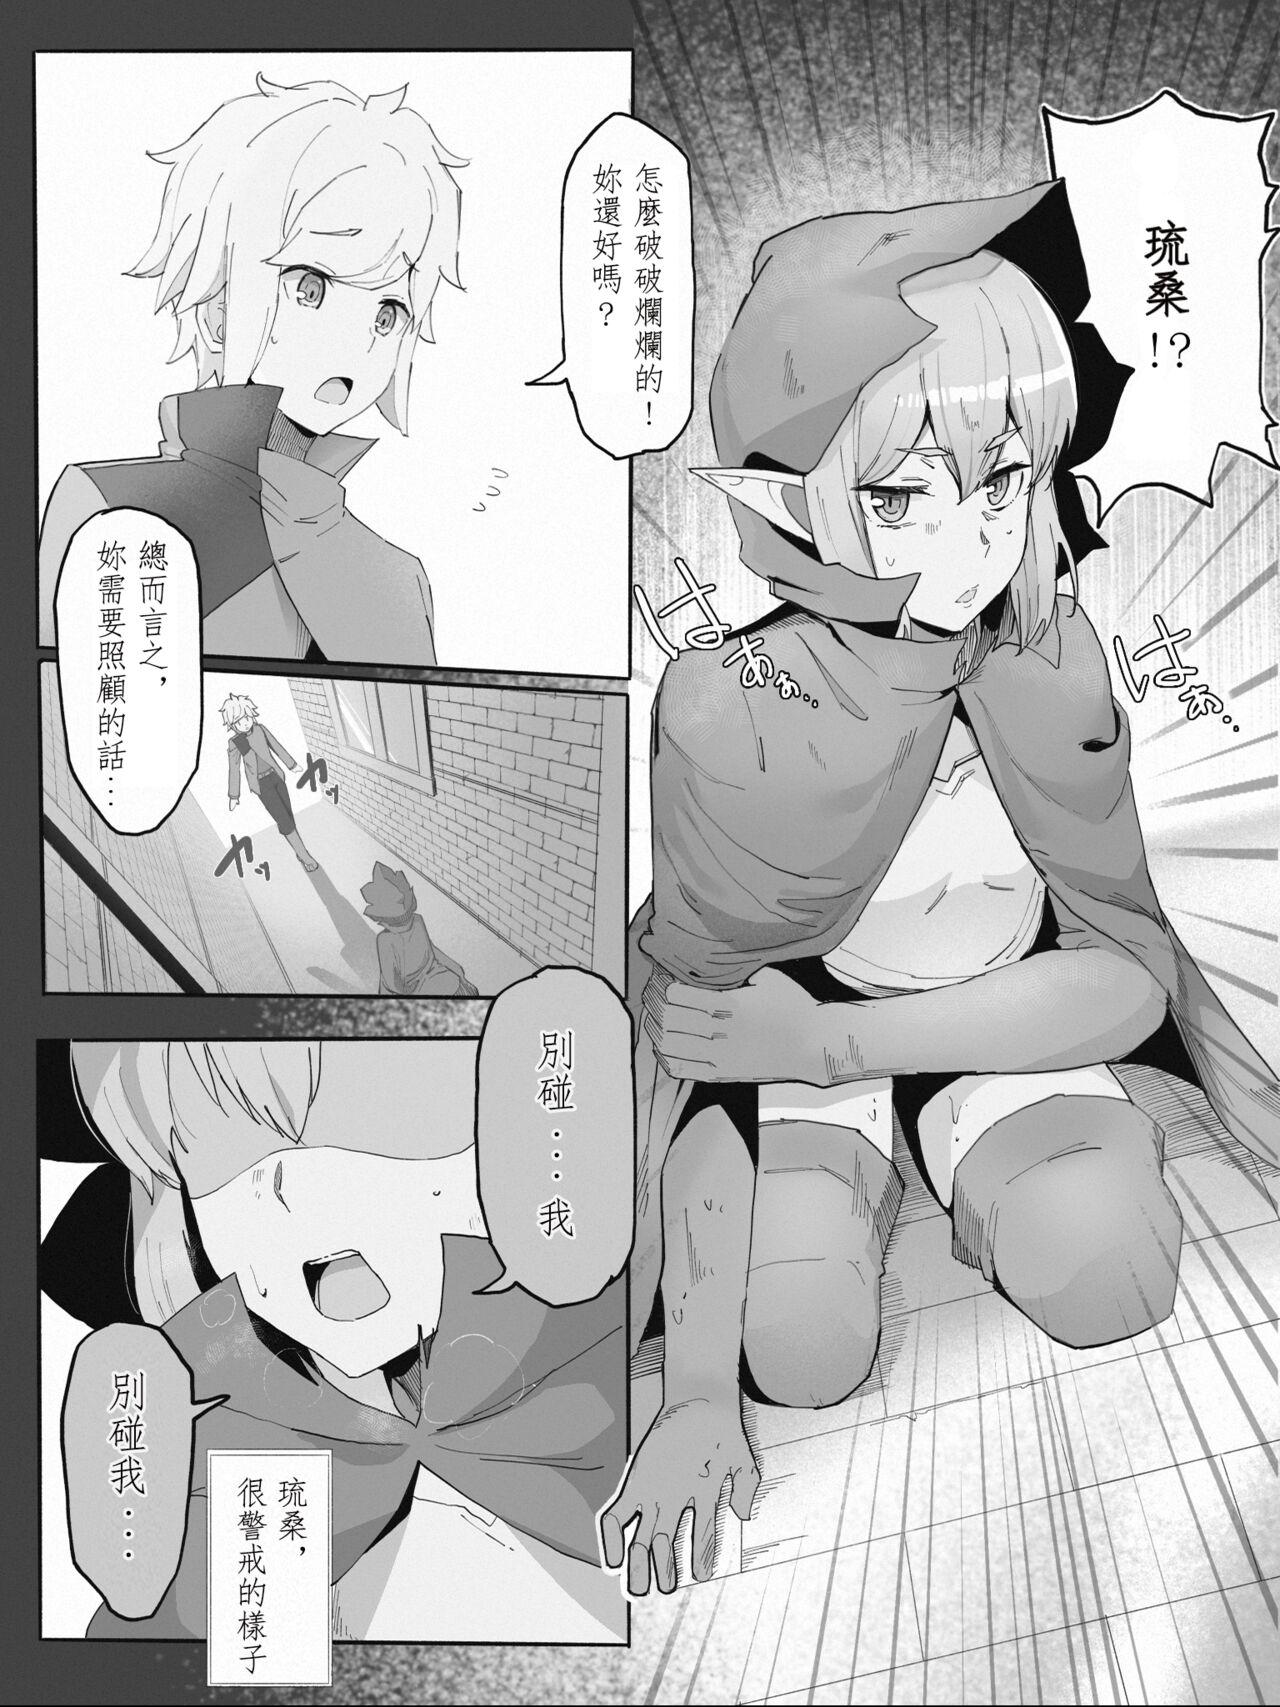 Swallowing Bell Ryuu Ecchi na Manga - Dungeon ni deai o motomeru no wa machigatteiru darou ka Amatuer Sex - Page 4